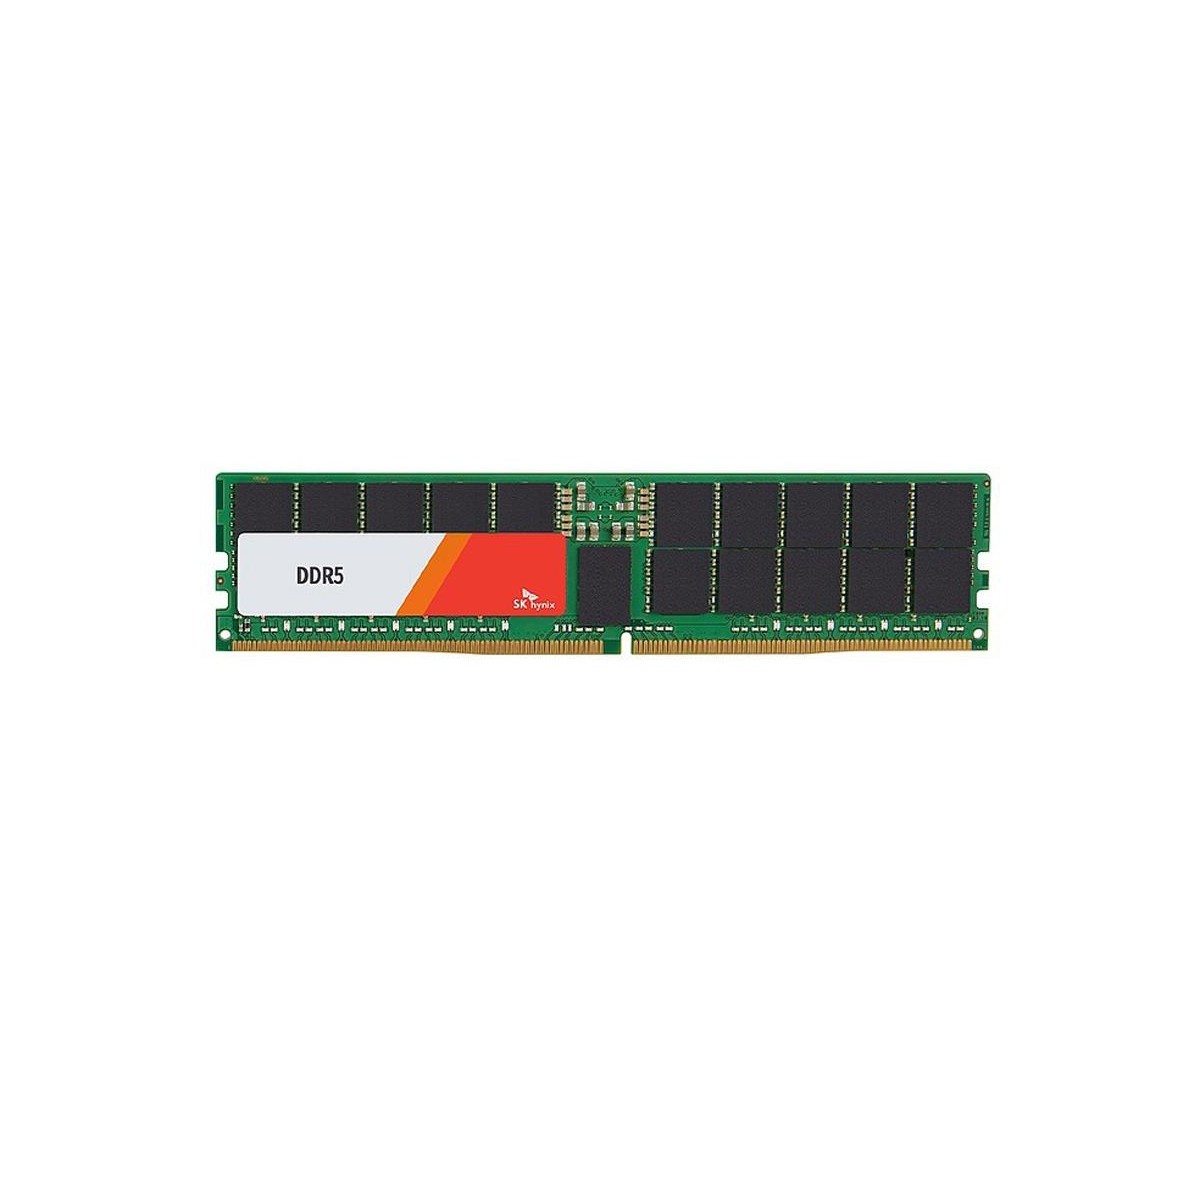 Hynix 48 GB reg. ECC DDR5-4800 HMCGY8MEBRB - 48 GB - DDR5